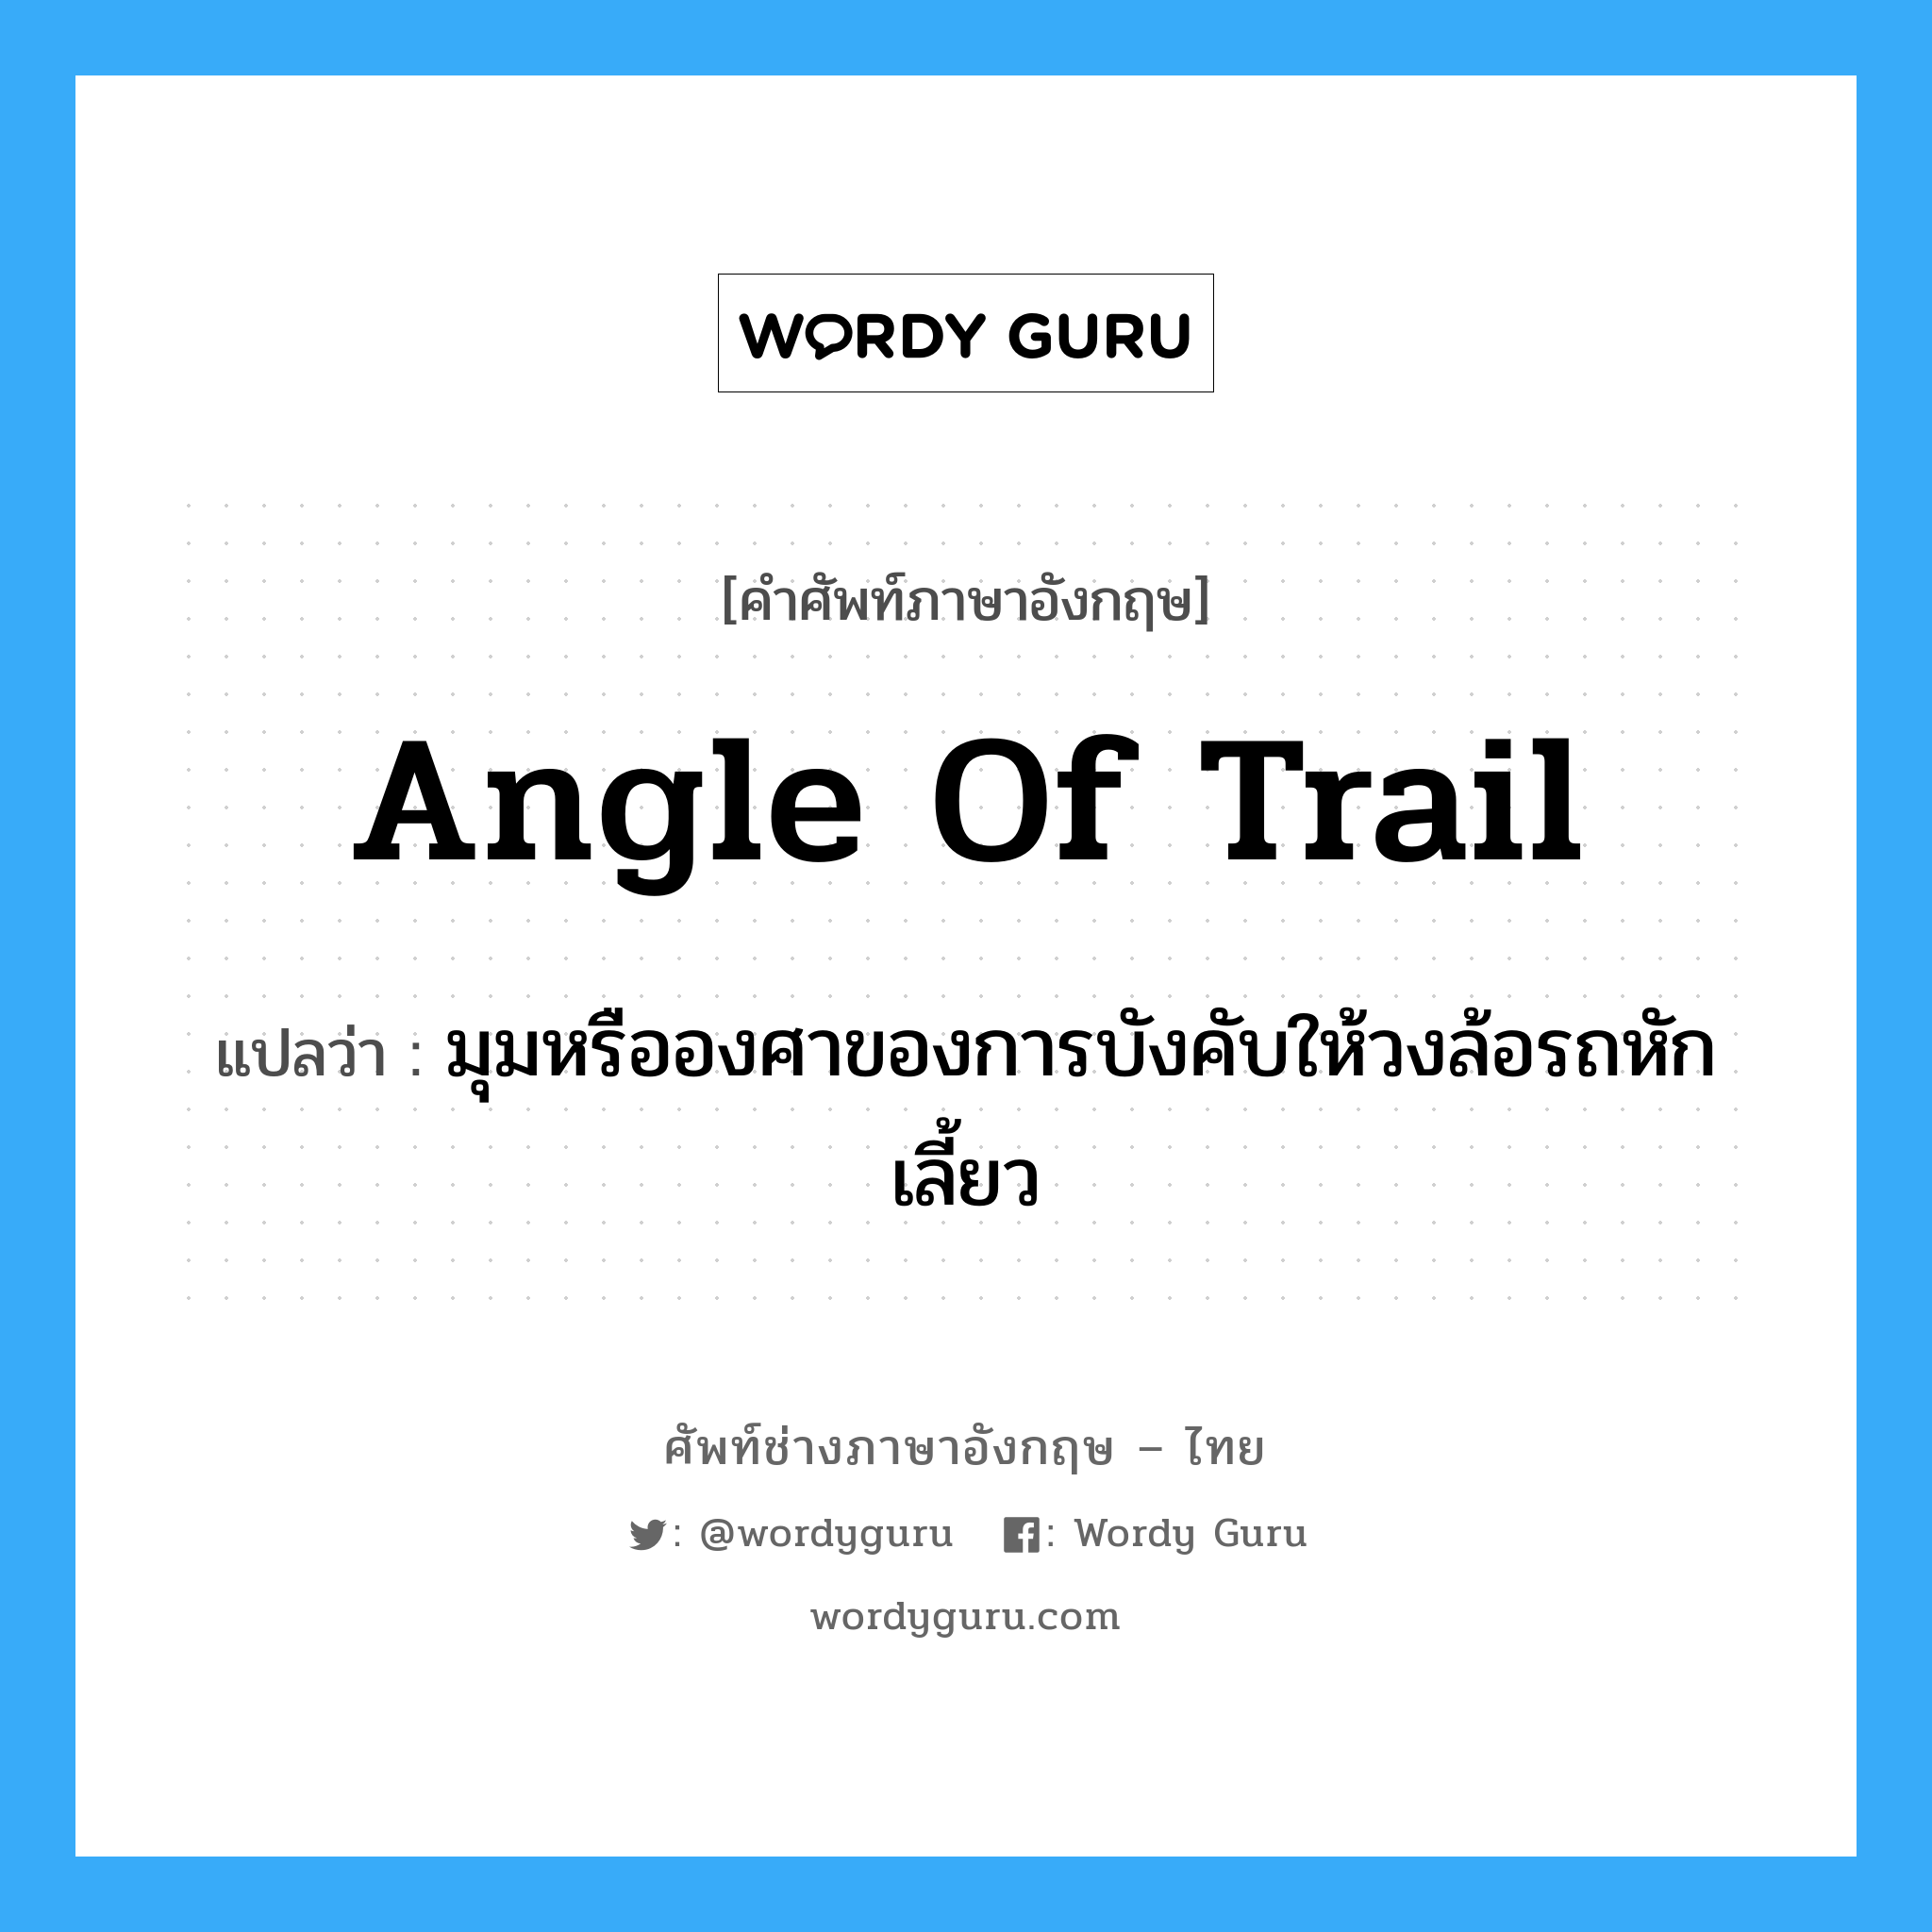 angle of trail แปลว่า?, คำศัพท์ช่างภาษาอังกฤษ - ไทย angle of trail คำศัพท์ภาษาอังกฤษ angle of trail แปลว่า มุมหรือองศาของการบังคับให้วงล้อรถหักเลี้ยว